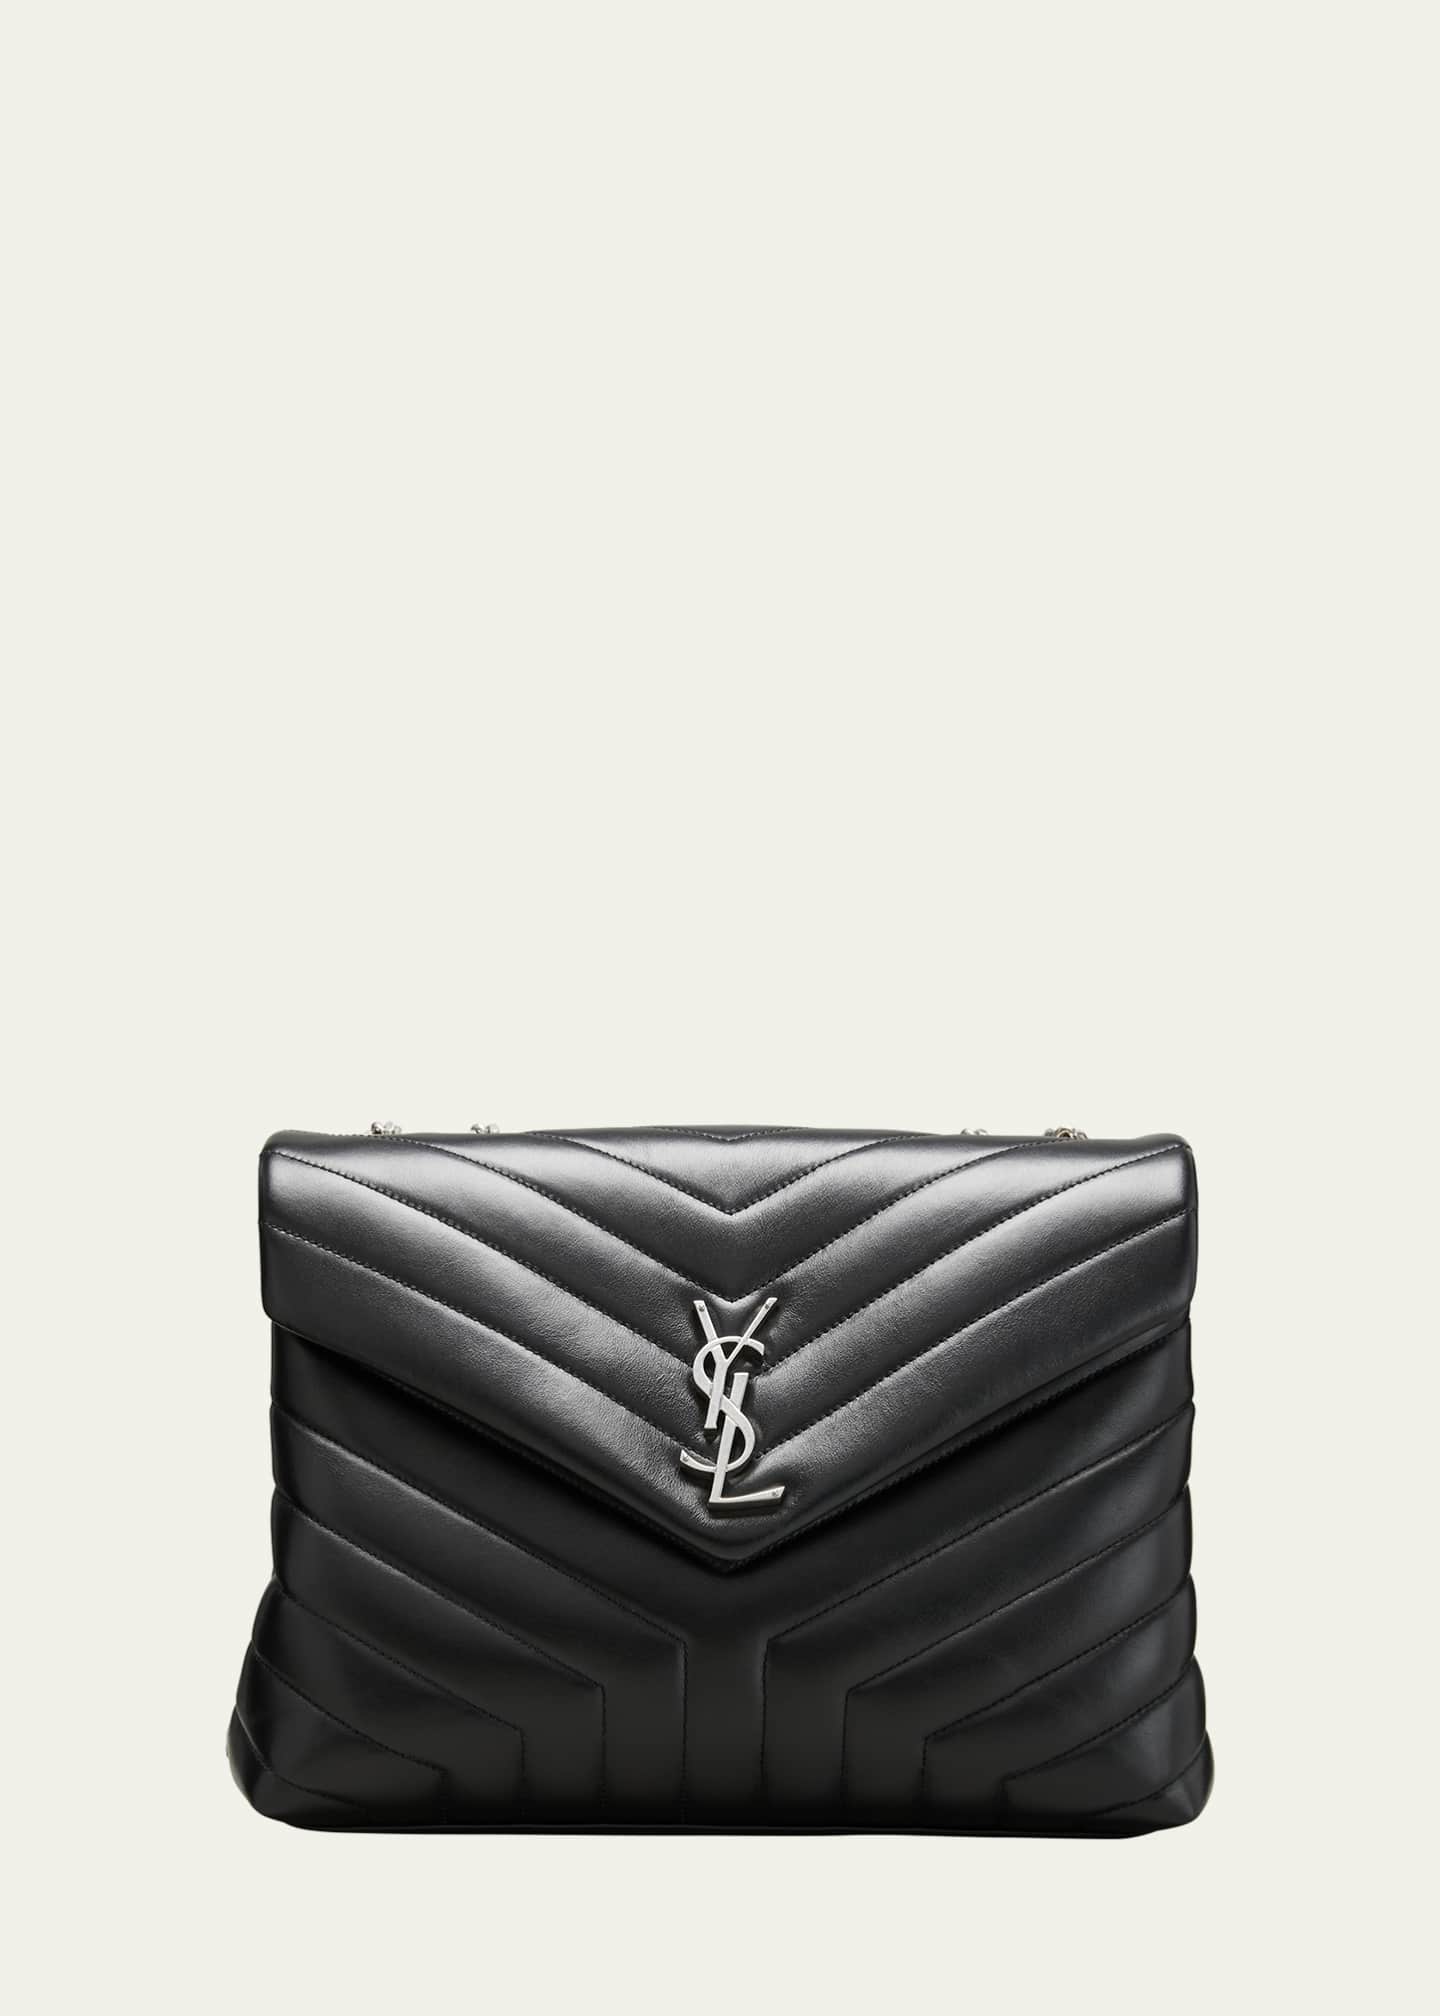 Saint Laurent Loulou Medium Matelasse Calfskin Shoulder Bag